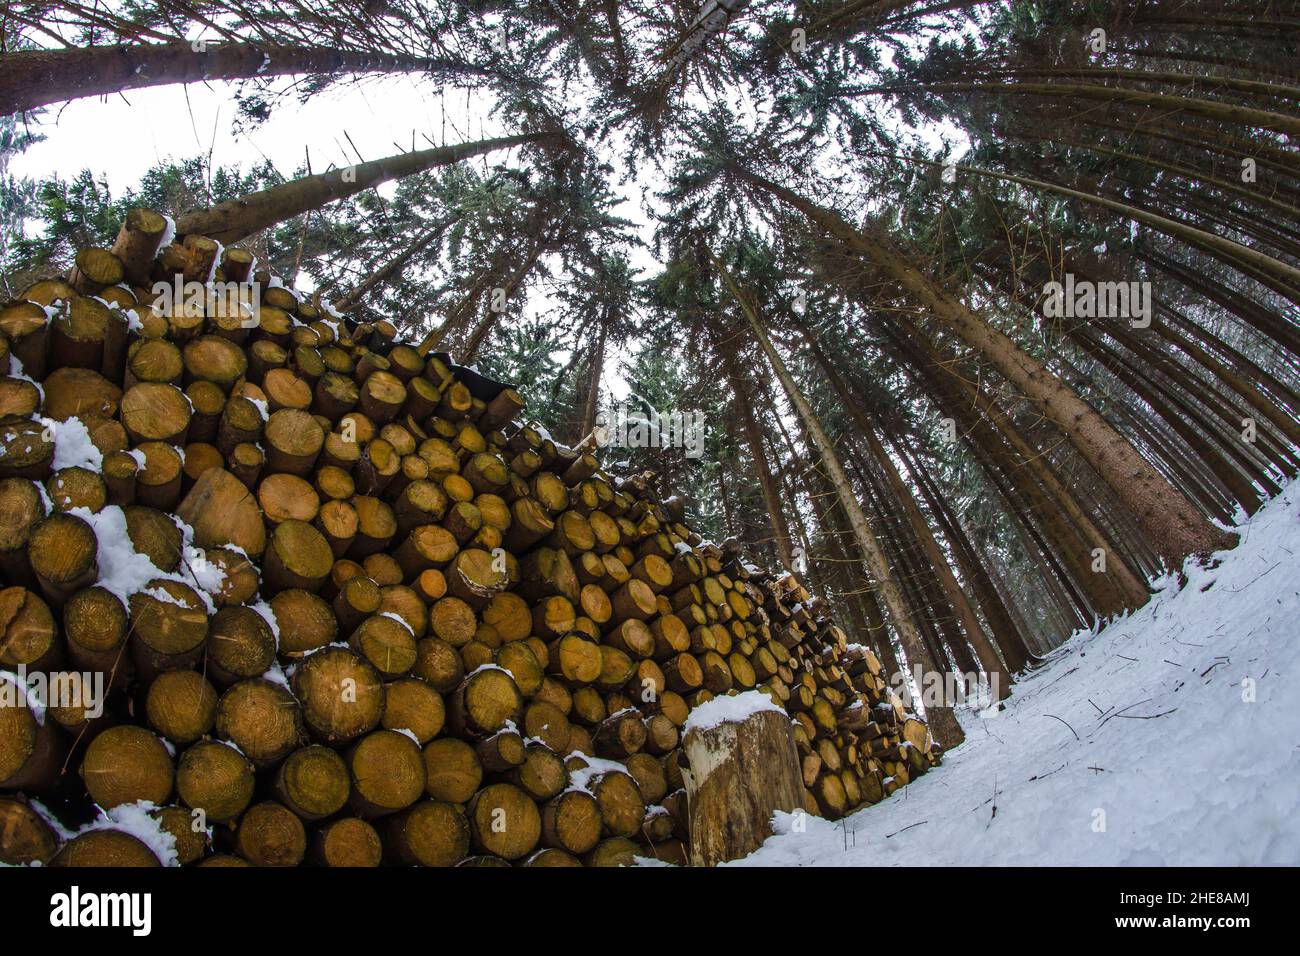 Hromada palivového dřeva V lese přichystaná k odvozu. Stockfoto